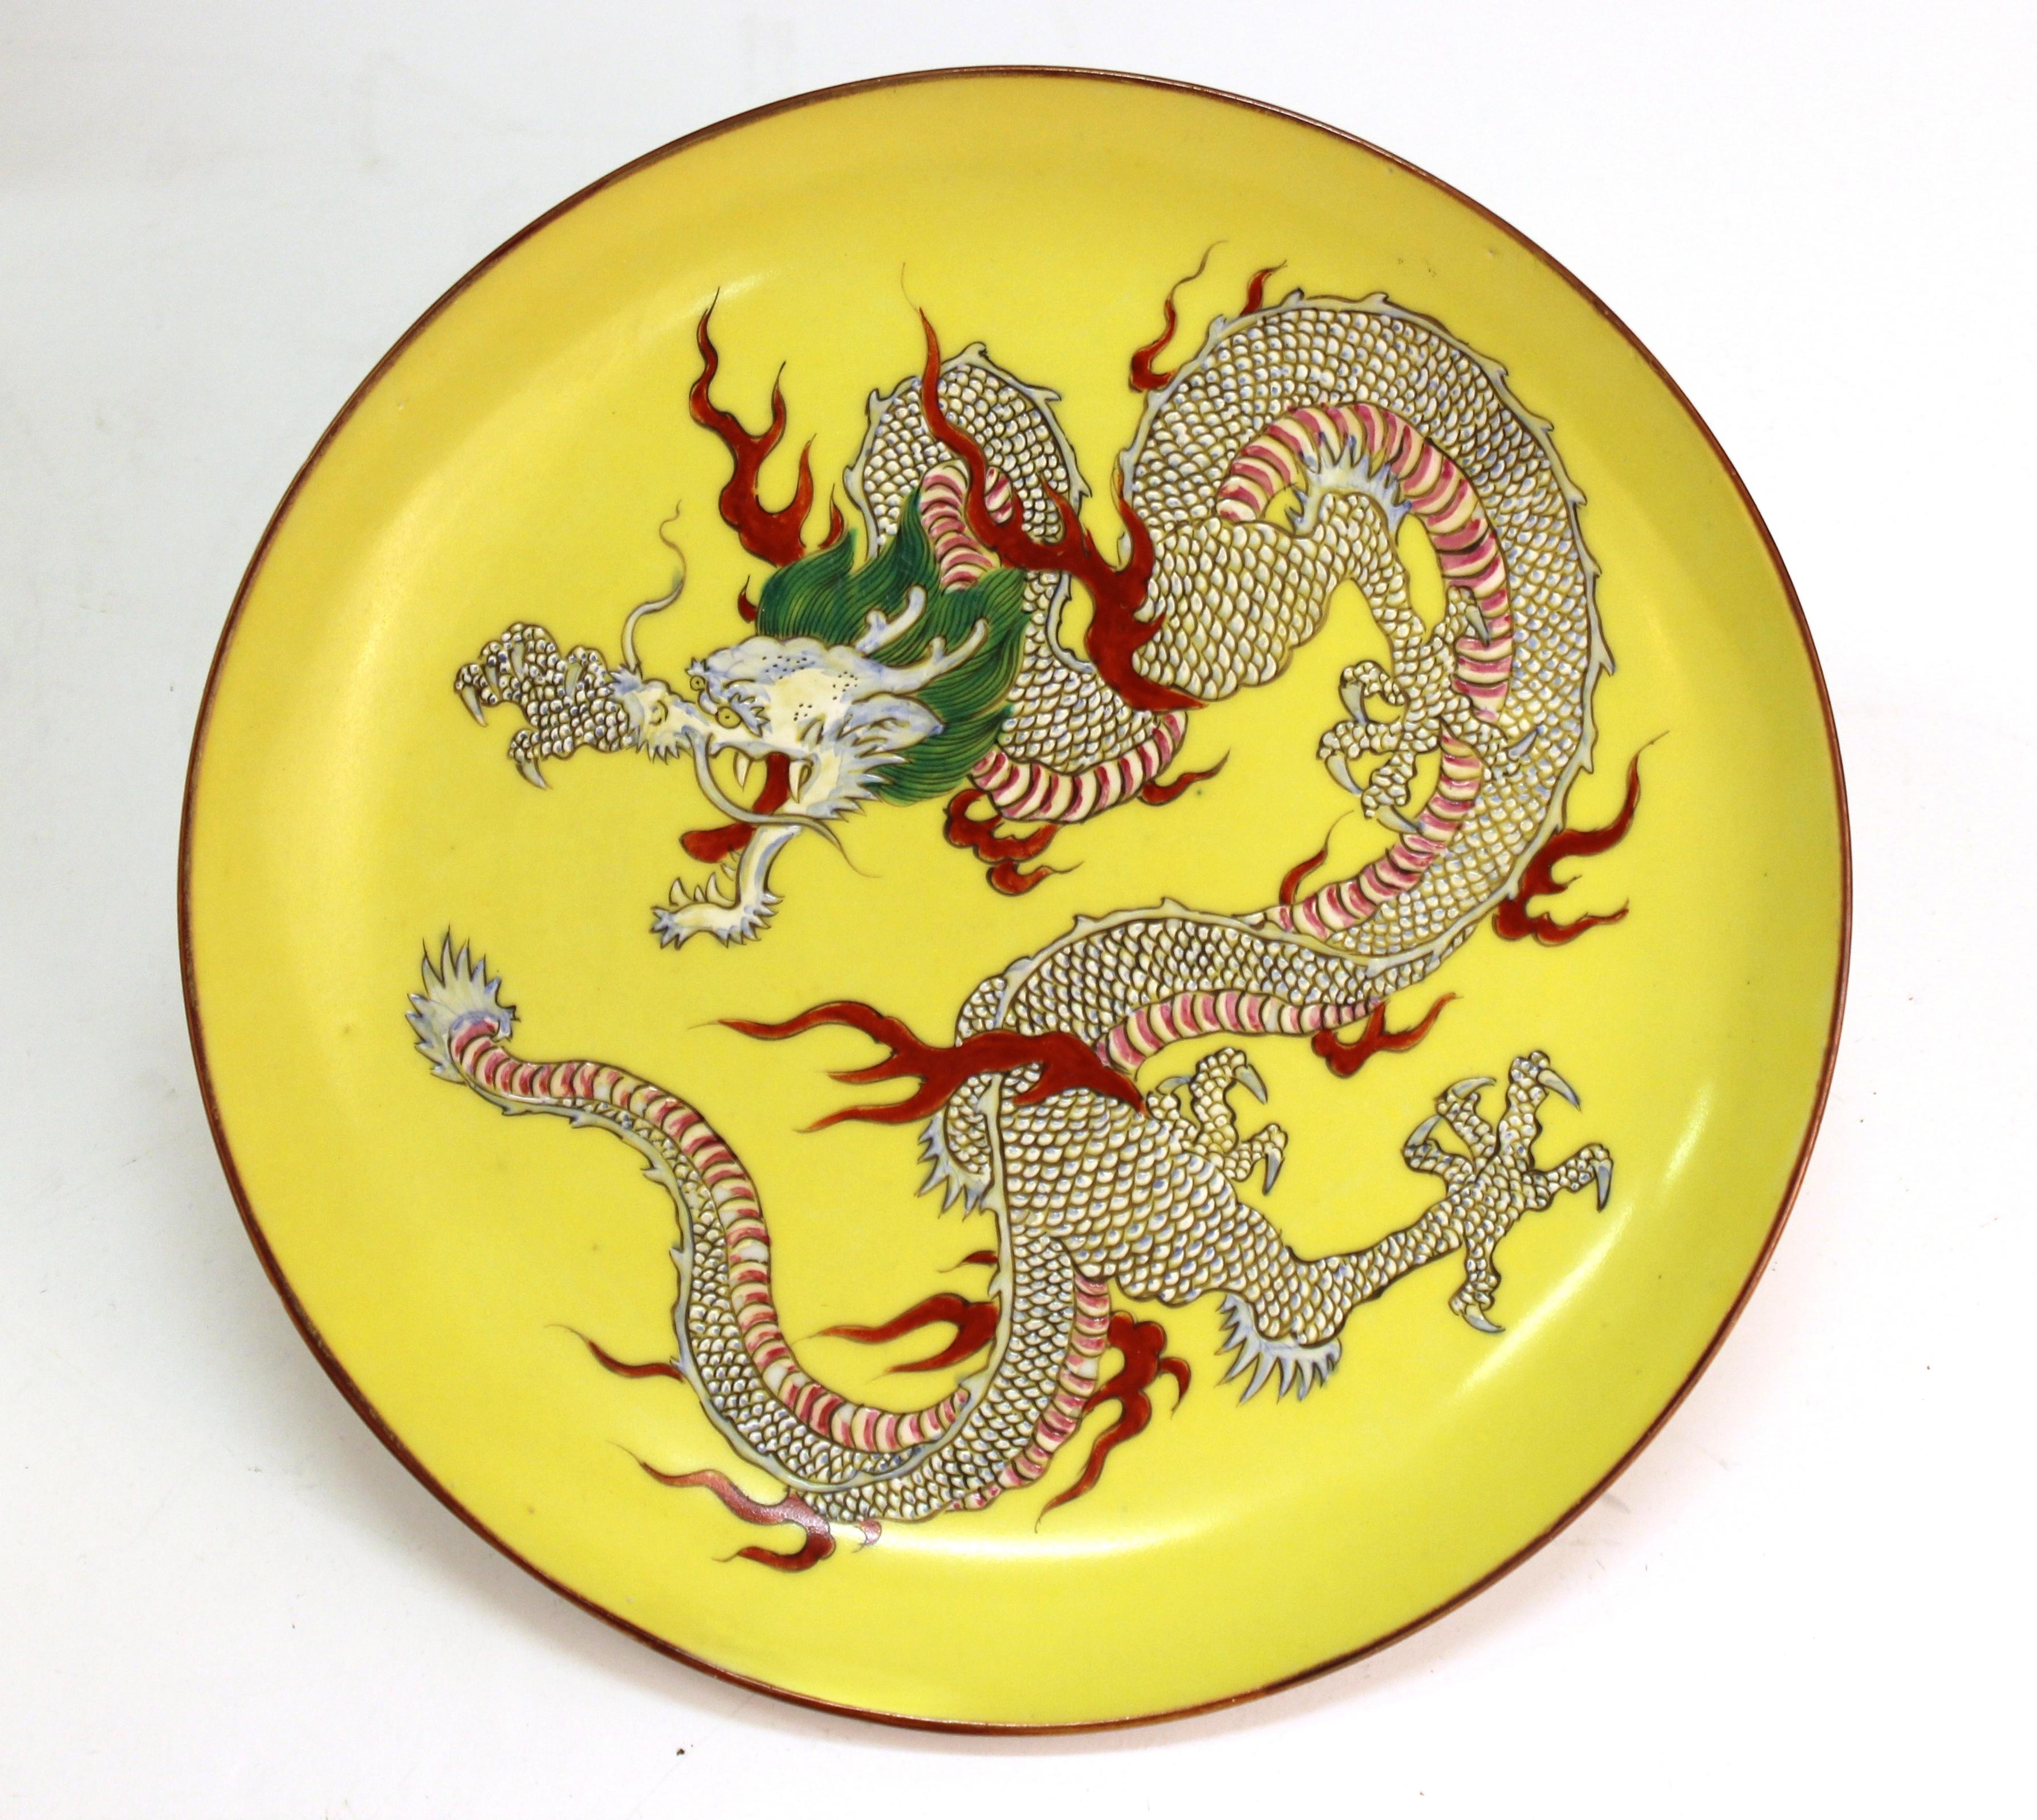 Chargeur décoratif en porcelaine jaune chinoise représentant un dragon à cinq griffes peint à la main. Cette pièce a été fabriquée en Chine dans les années 1890-1900. Elle est en excellent état et présente des traces d'usure dues à son âge.